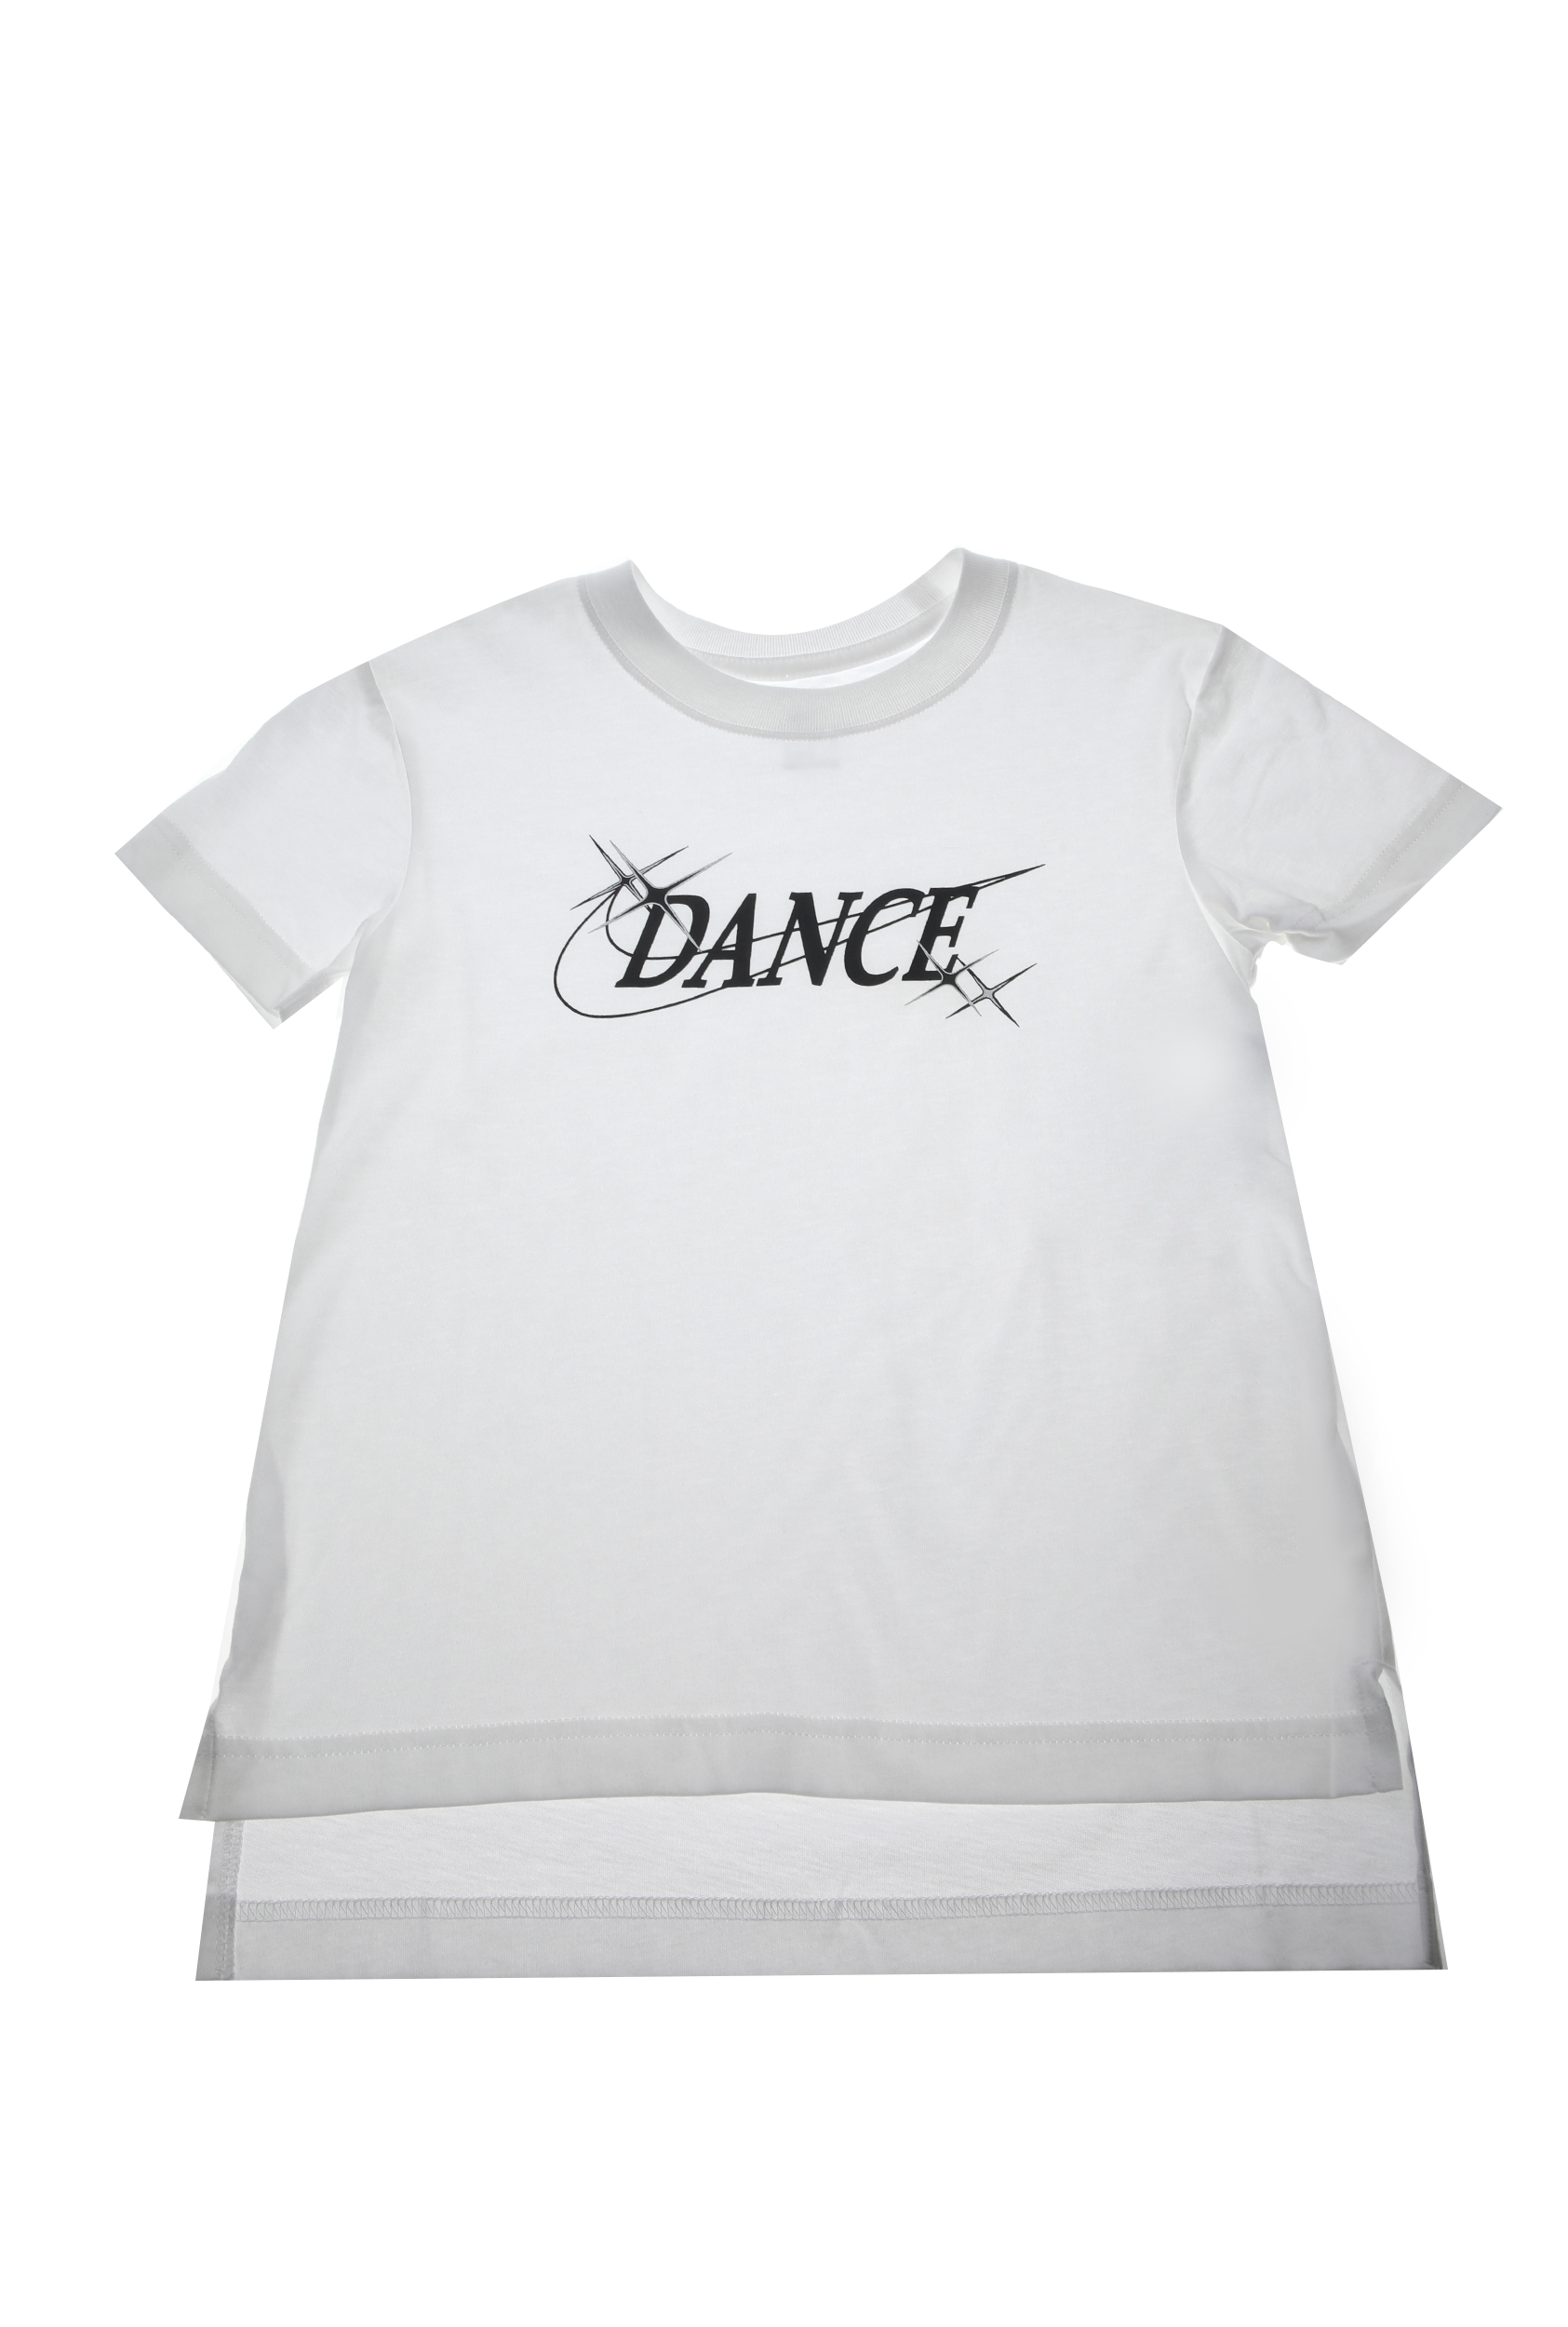 Παιδικά/Girls/Ρούχα/Αθλητικά NIKE - Παιδική κοντομάνικη μπλούζα NIKE ΤEE DANCE λευκή